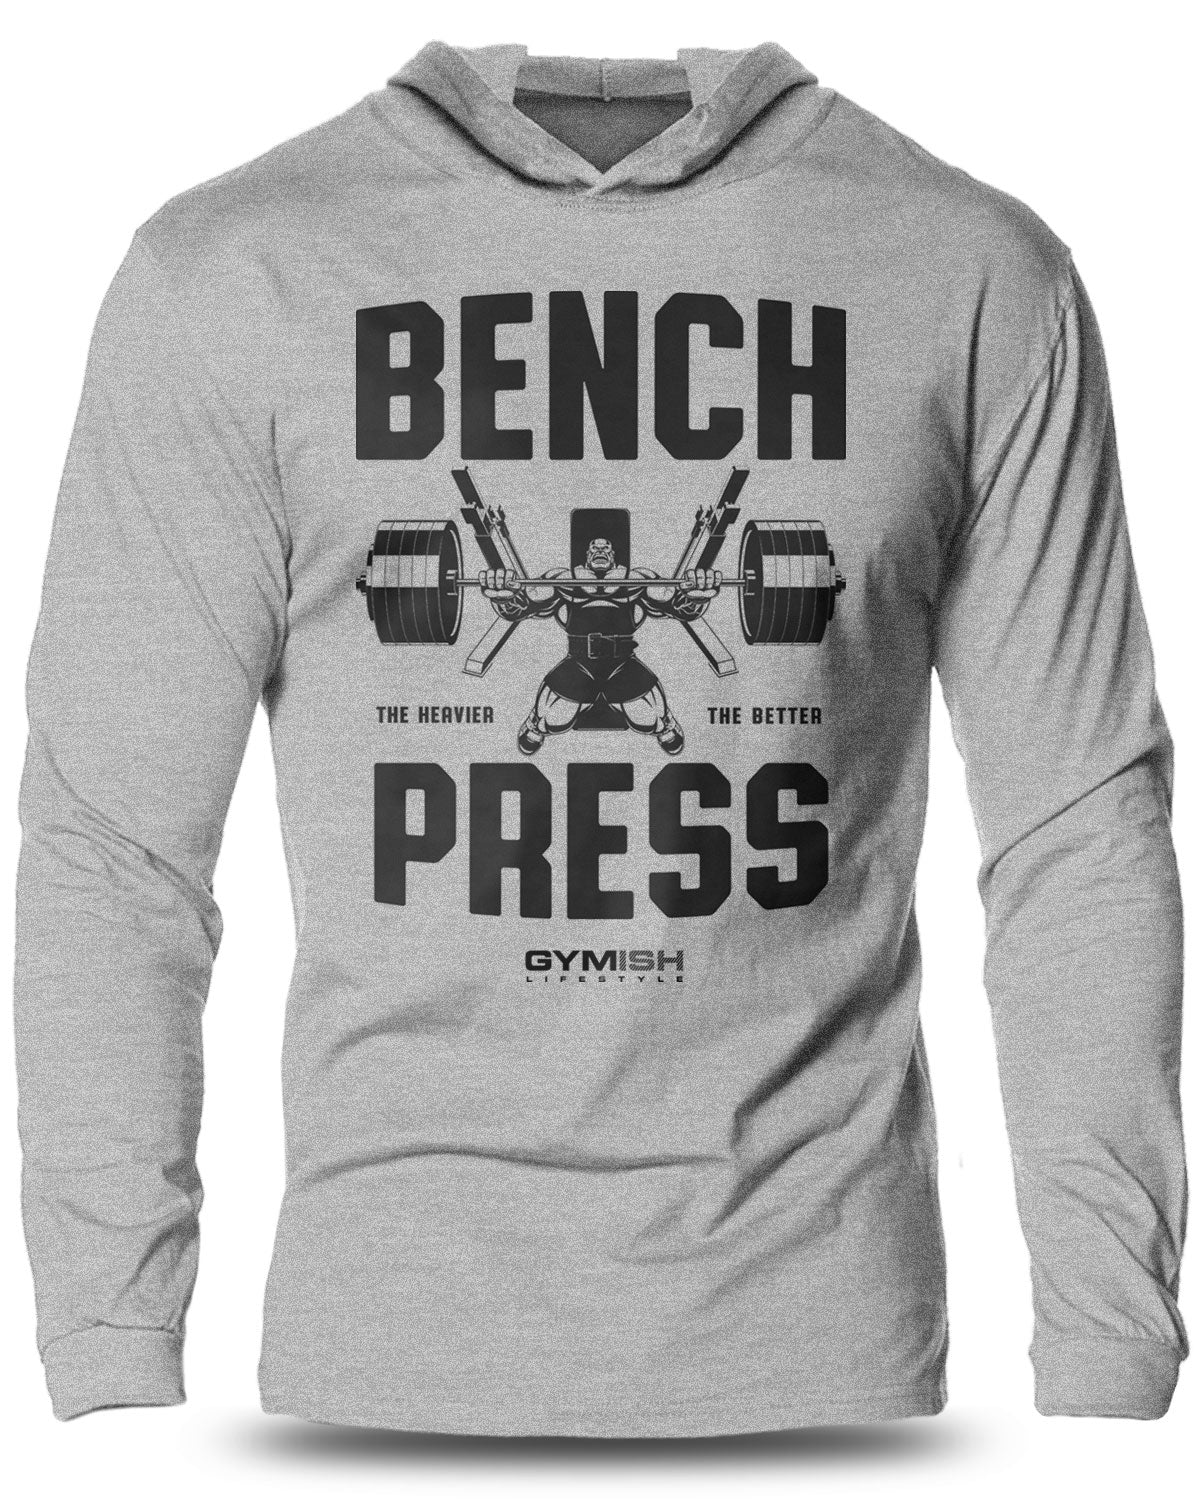 025- Bench Press Lightweight Long Sleeve Hooded T-shirt for Men